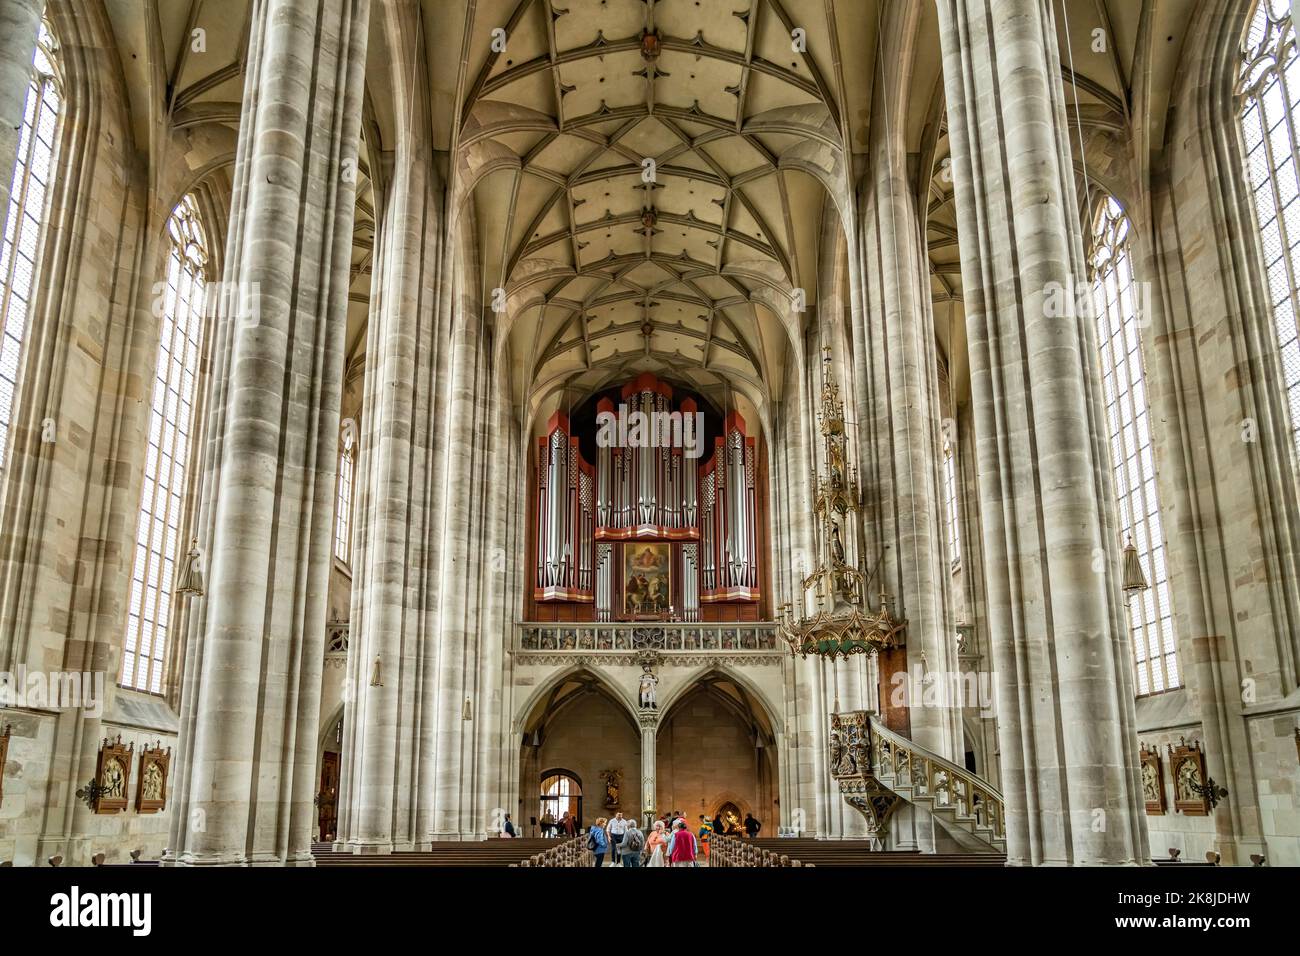 Kirchenorgel  der katholischen Stadtpfarrkirche St. Georg, Dinkelsbühl, Mittelfranken, Bayern, Deutschland  |  Church organ of the catholic parish chu Stock Photo